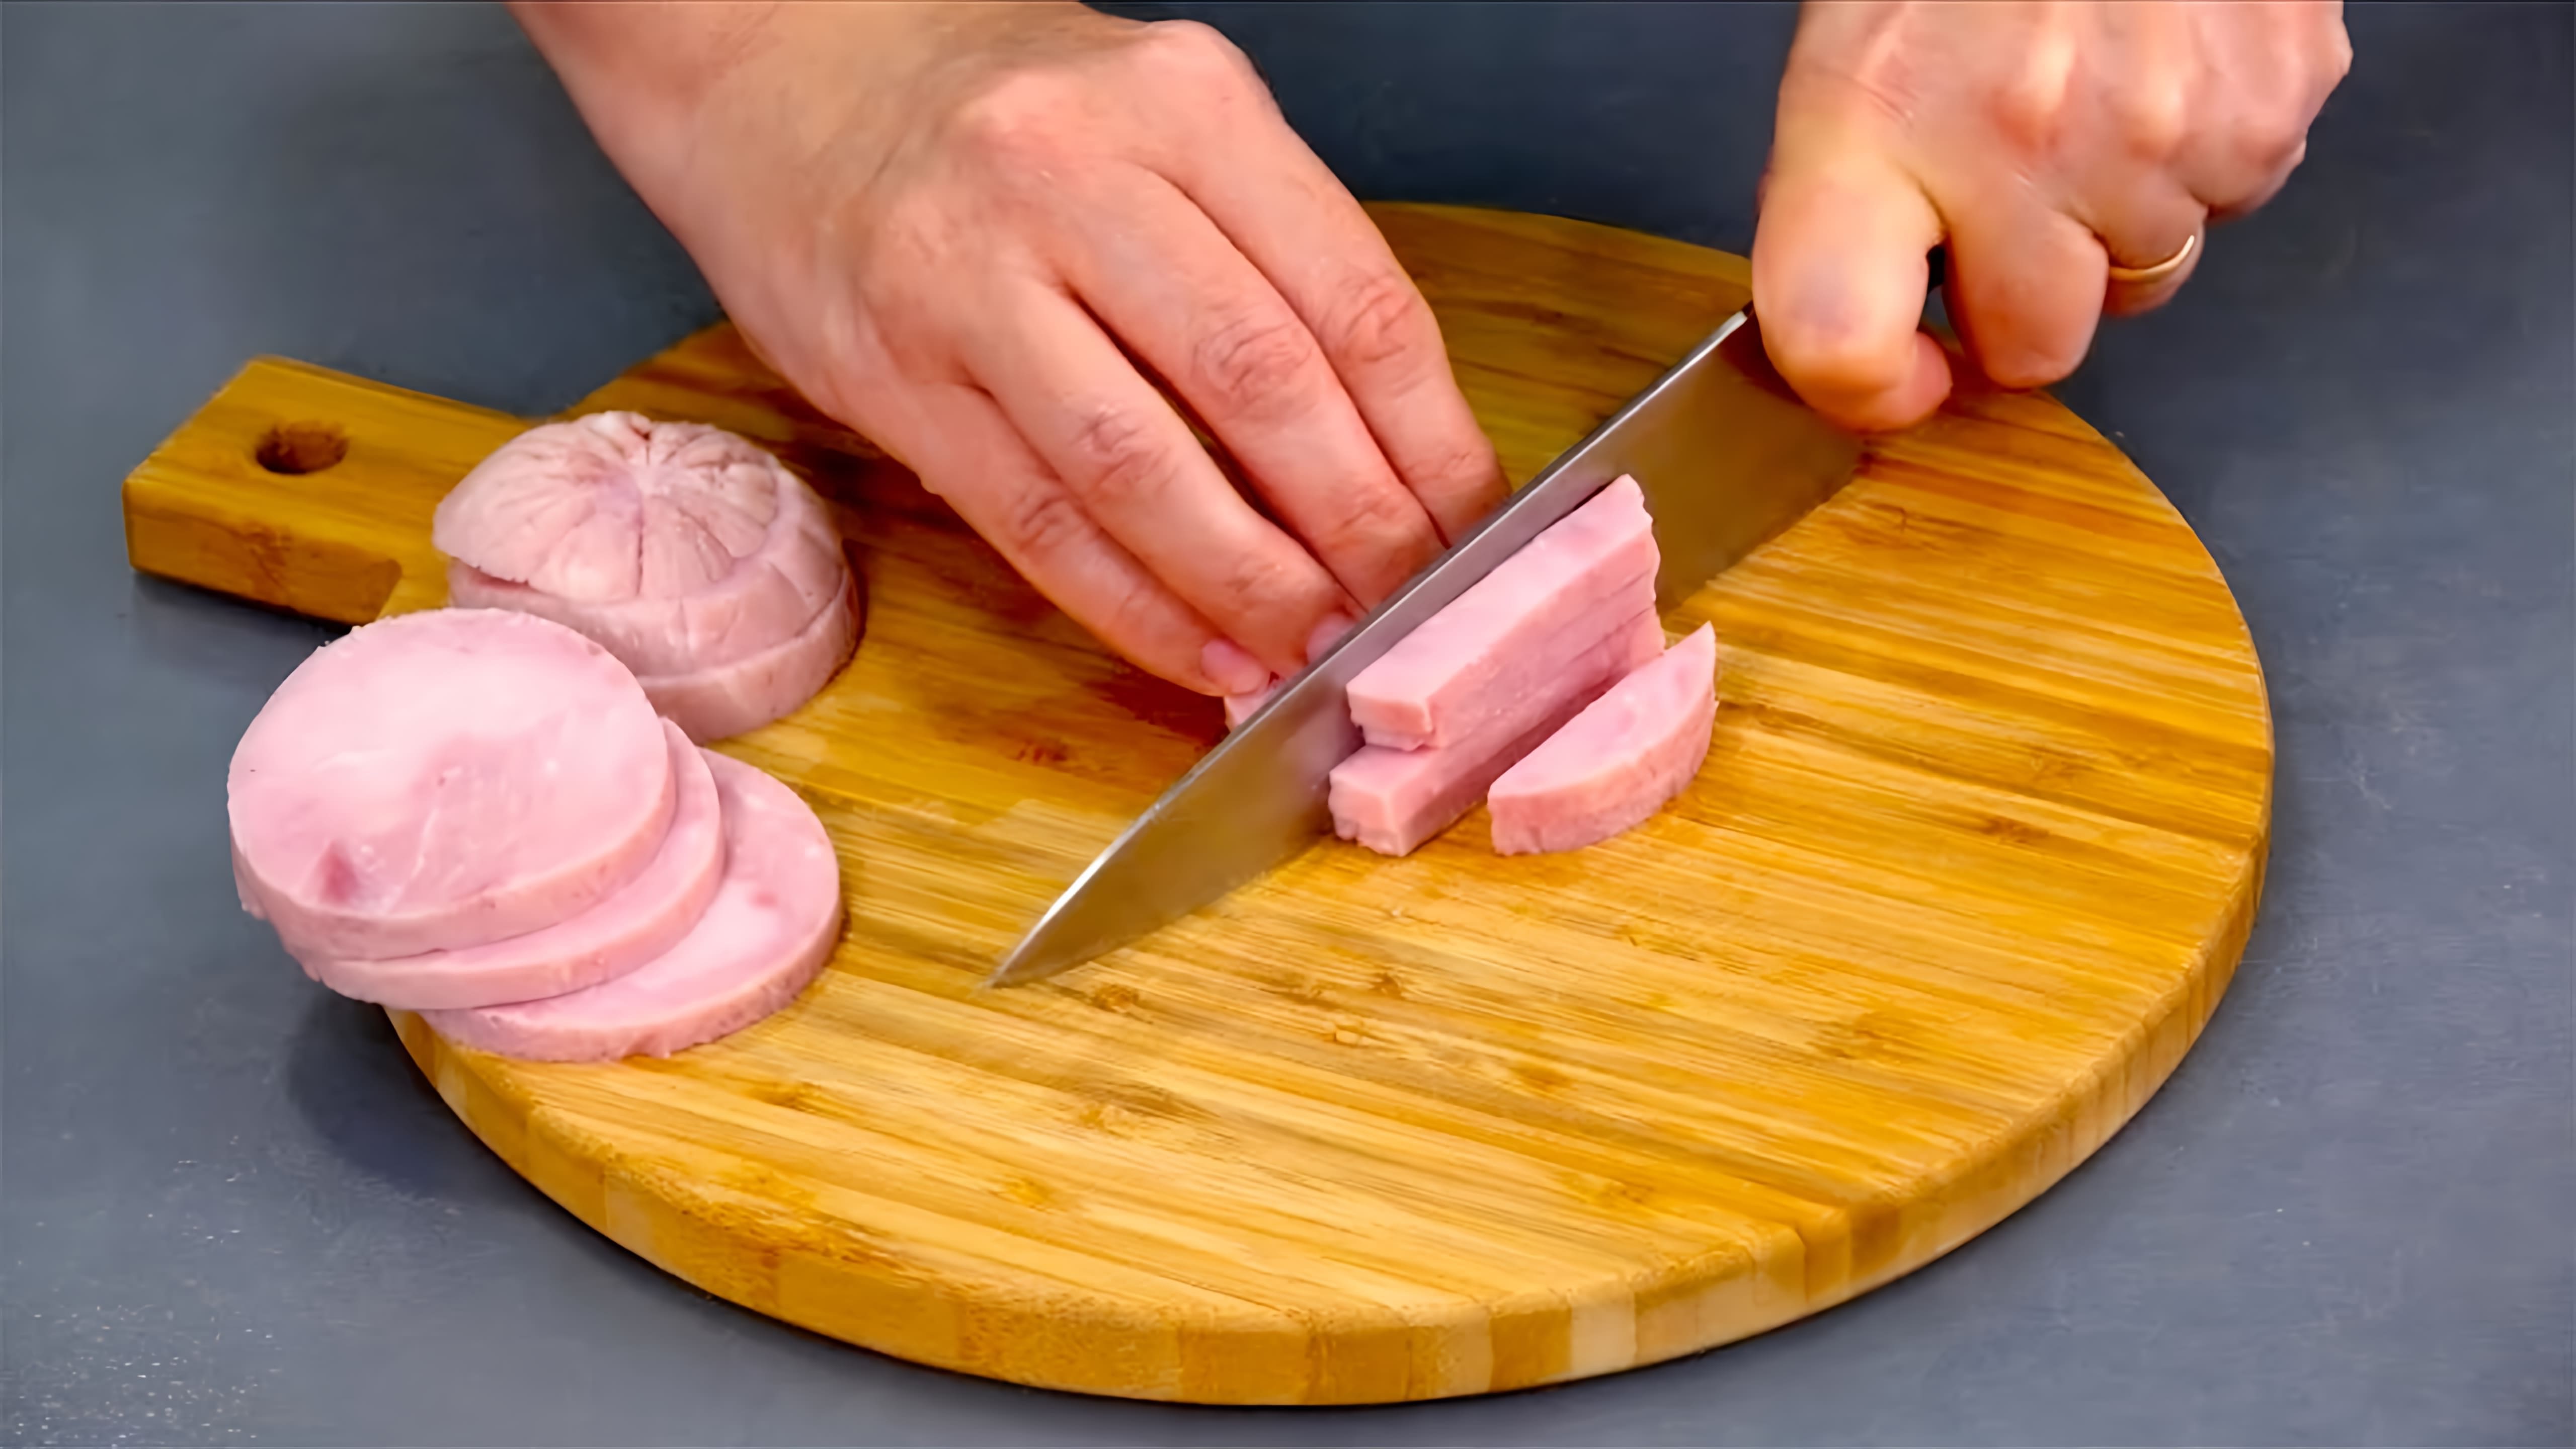 В этом видео демонстрируются три рецепта окрошки - с говядиной, с курицей и овощной